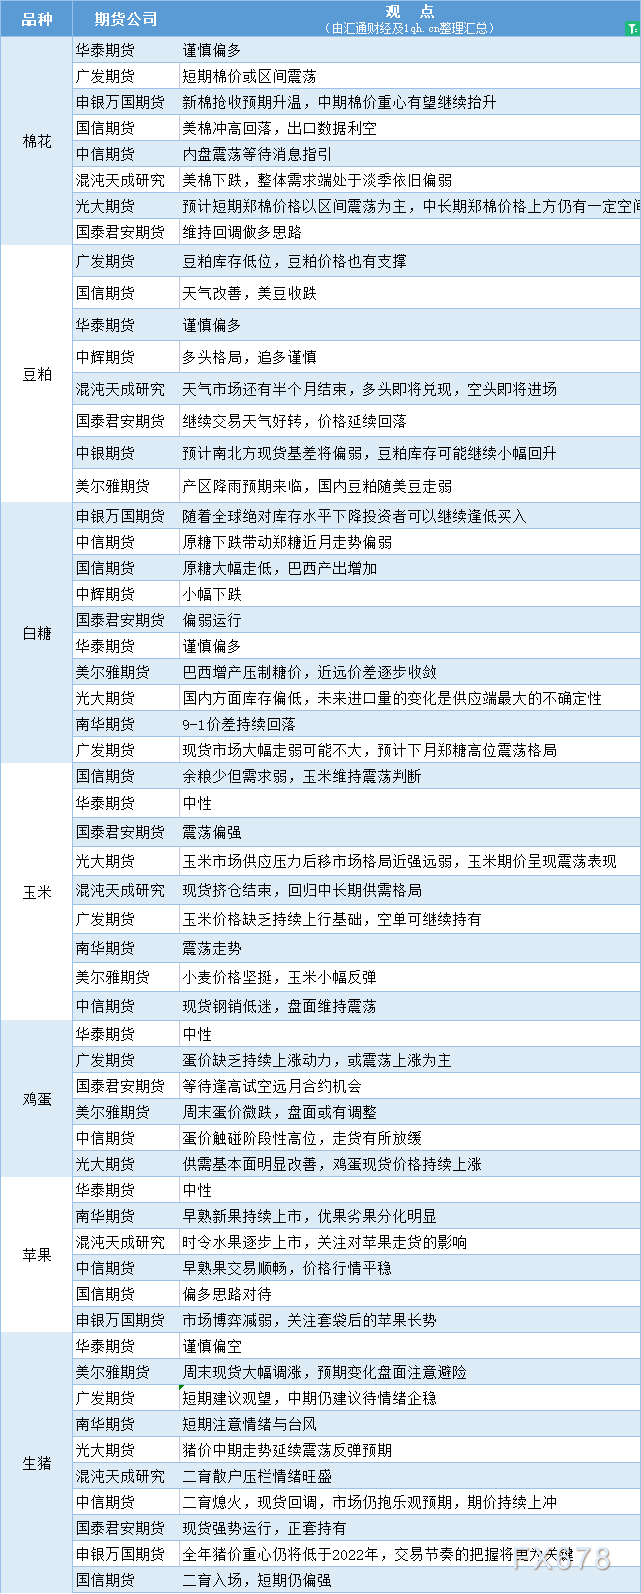  讯——期货公司不雅观点汇总一张图：7月31日农产品(棉花、豆粕、白糖、玉米、鸡蛋、生猪等) 